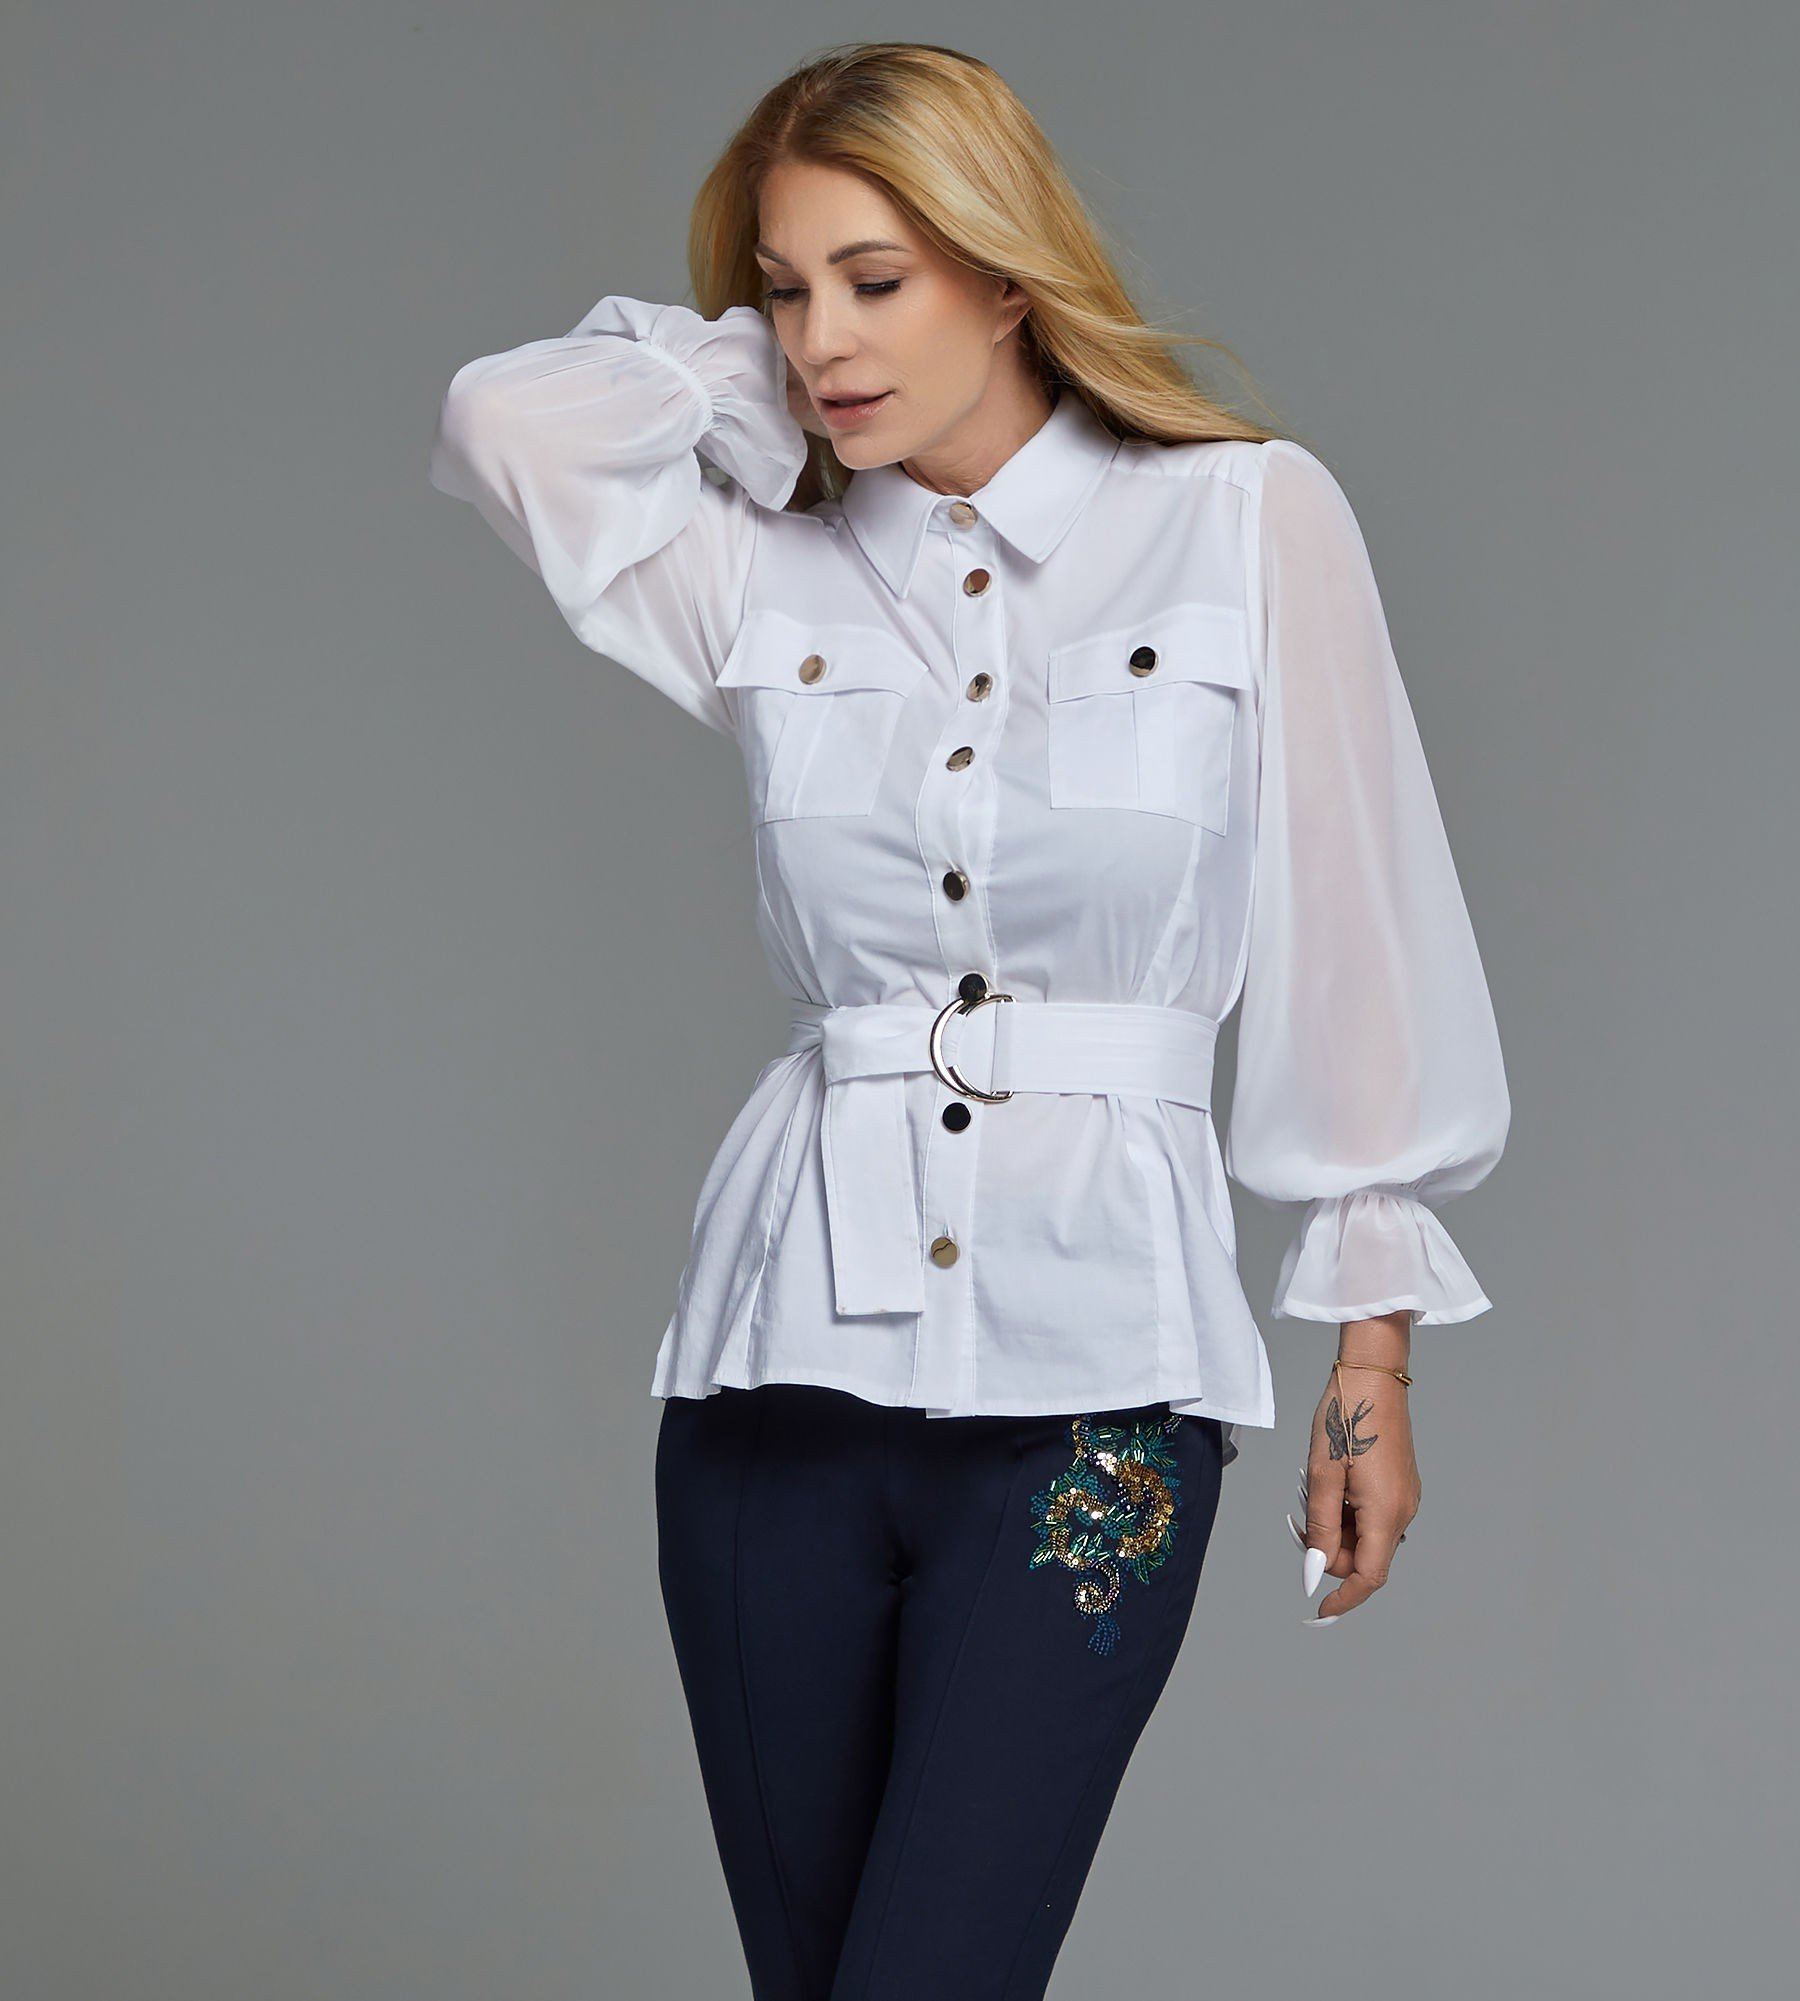 Bluse mit Gürtel - Alle Produkte ansehen - Fashion - Sarah Kern - Marken